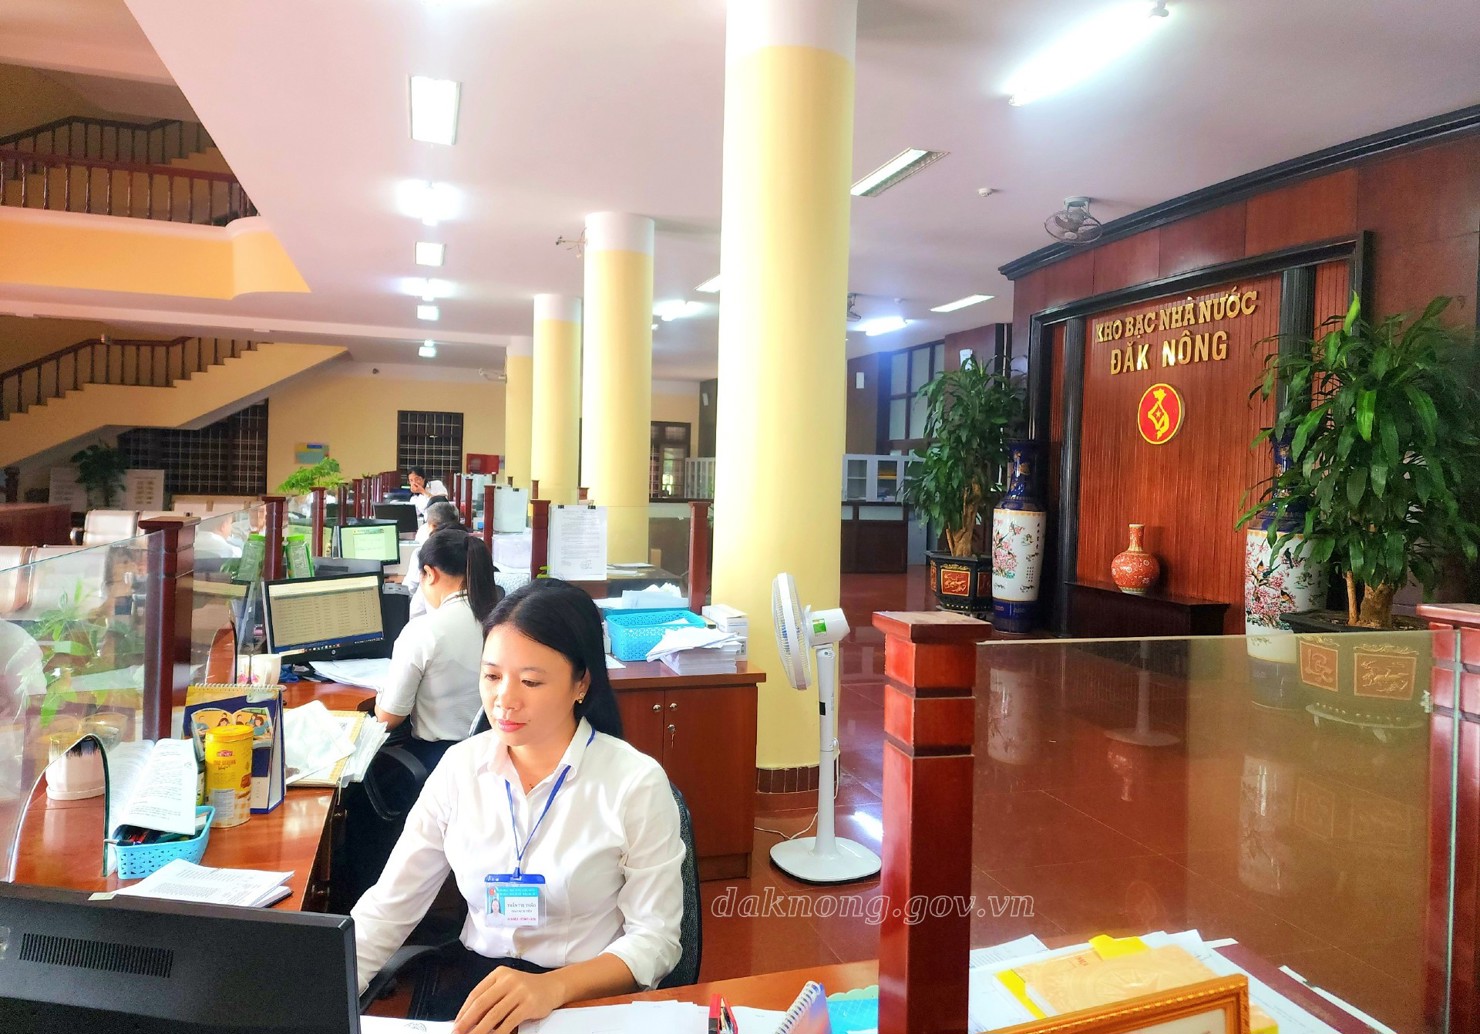 Đến nay, có 937 đơn vị đã đăng ký tham gia dịch vụ công trực tuyến tại KBNN Đắk Nông đạt tỷ lệ 100%.